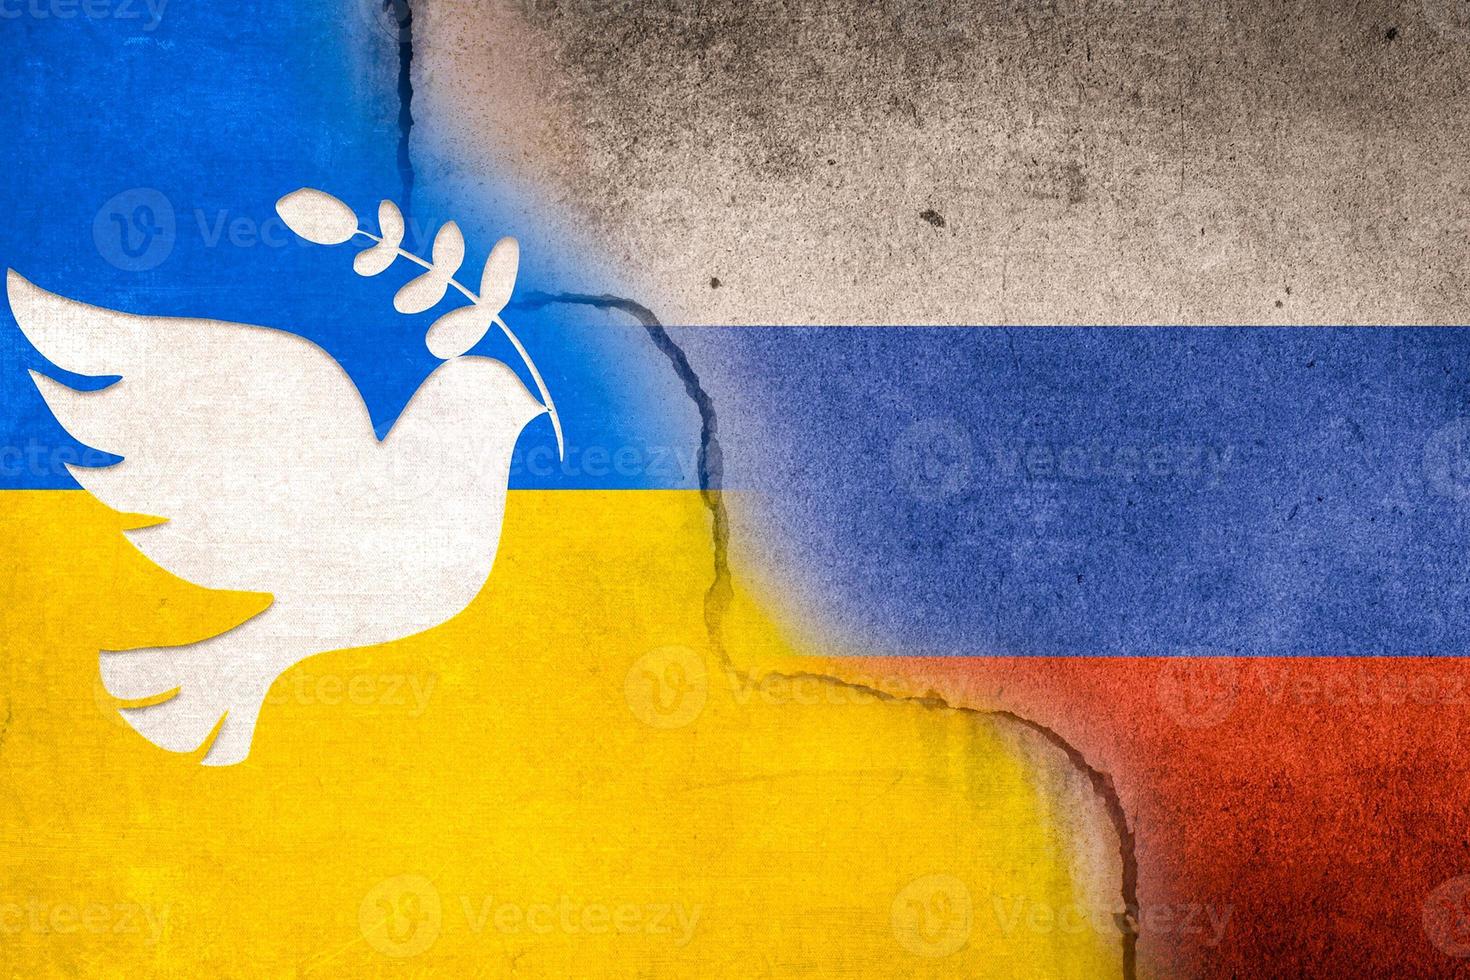 imagen de desenfoque bandera borrosa de rusia y ucrania con una paloma blanca de pájaro de la paz pintada en una pared de hormigón. relación entre ucrania y rusia. foto